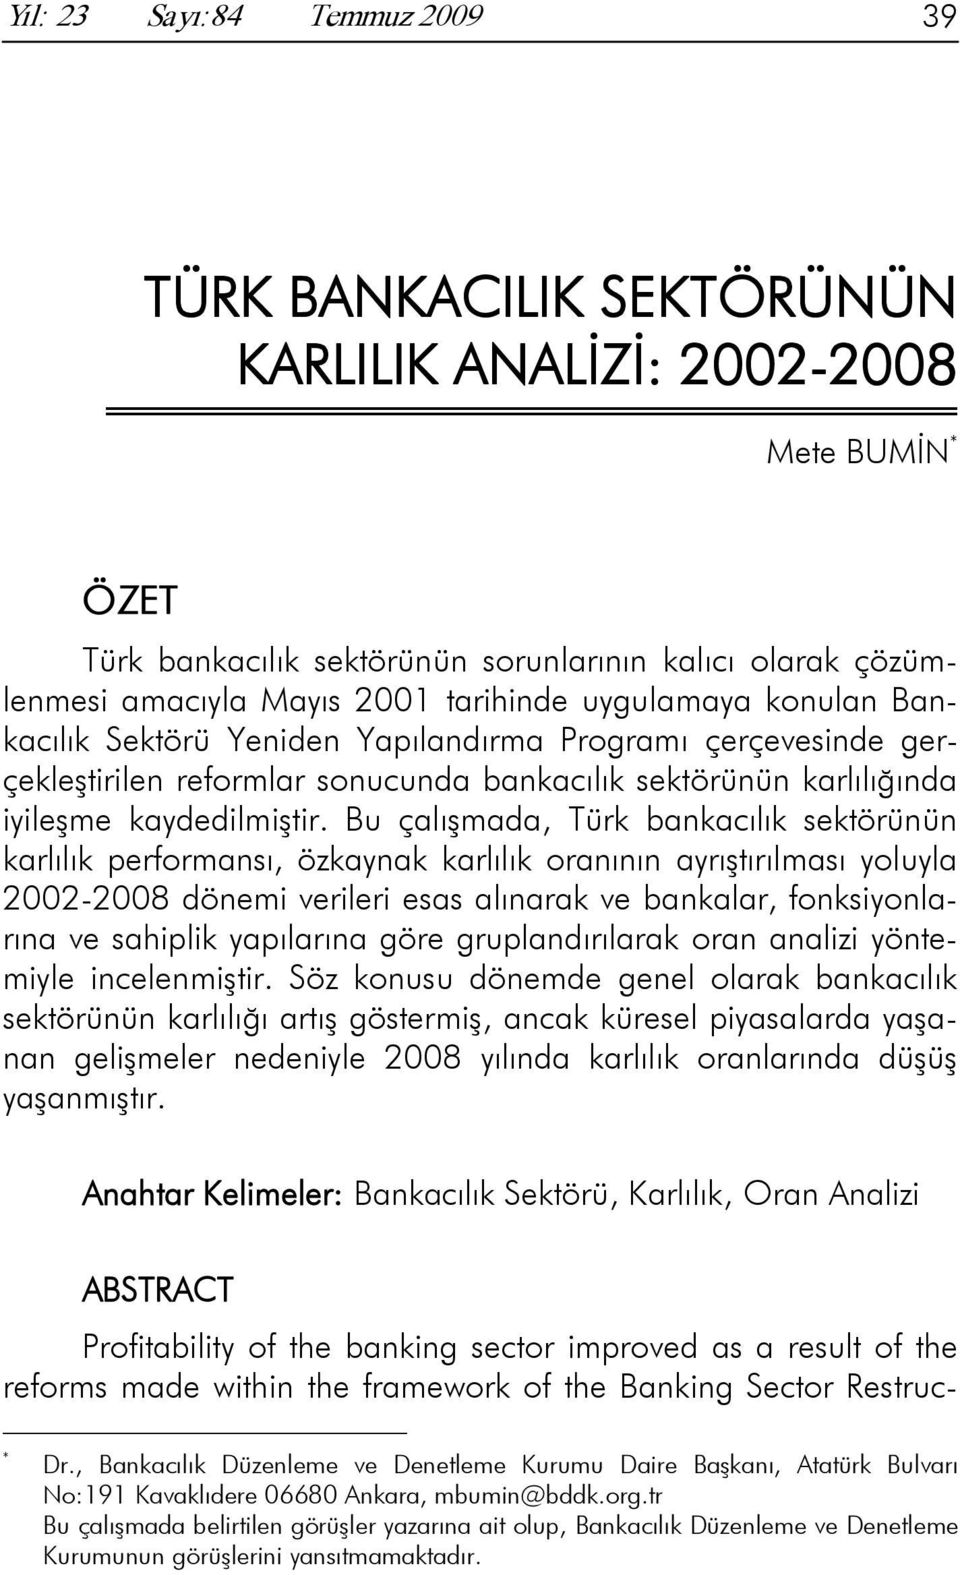 Bu çalışmada, Türk bankacılık sektörünün karlılık performansı, özkaynak karlılık oranının ayrıştırılması yoluyla 2002-2008 dönemi verileri esas alınarak ve bankalar, fonksiyonlarına ve sahiplik